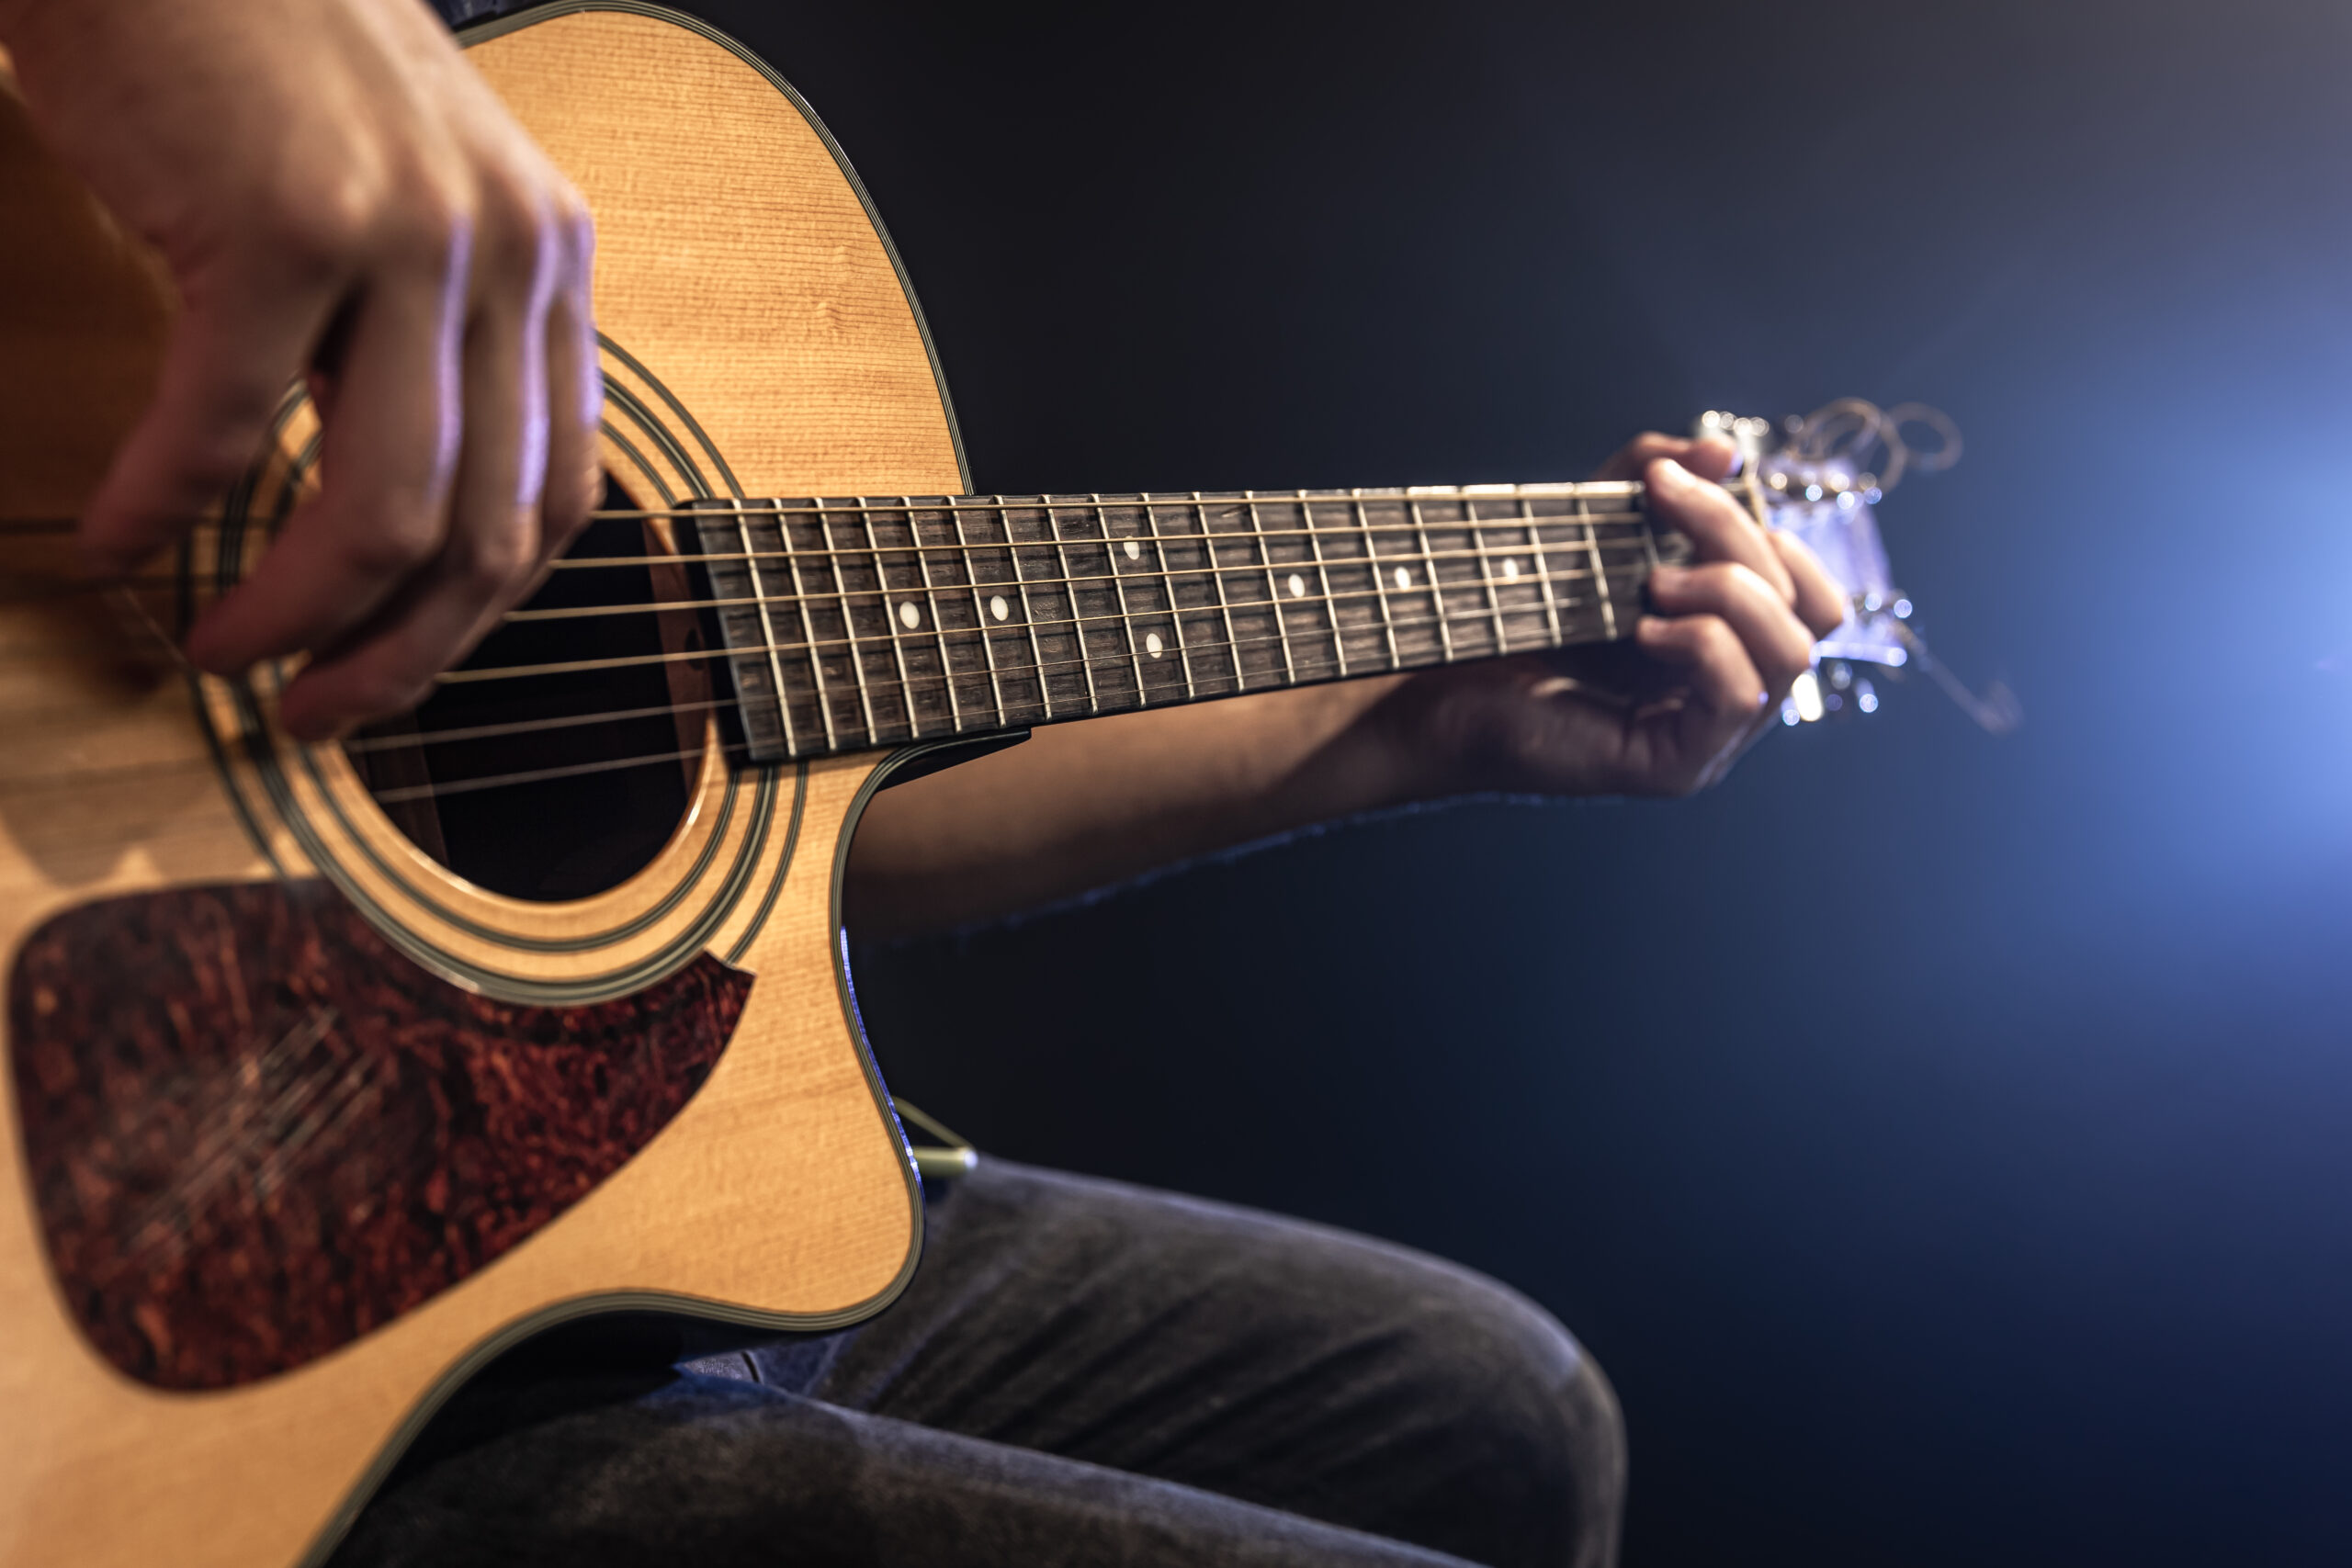 Las guitarras electroacústicas, también conocidas como guitarras acústicas eléctricas, son instrumentos musicales que combinan las características de las guitarras acústicas tradicionales con la capacidad de amplificación electrónica.